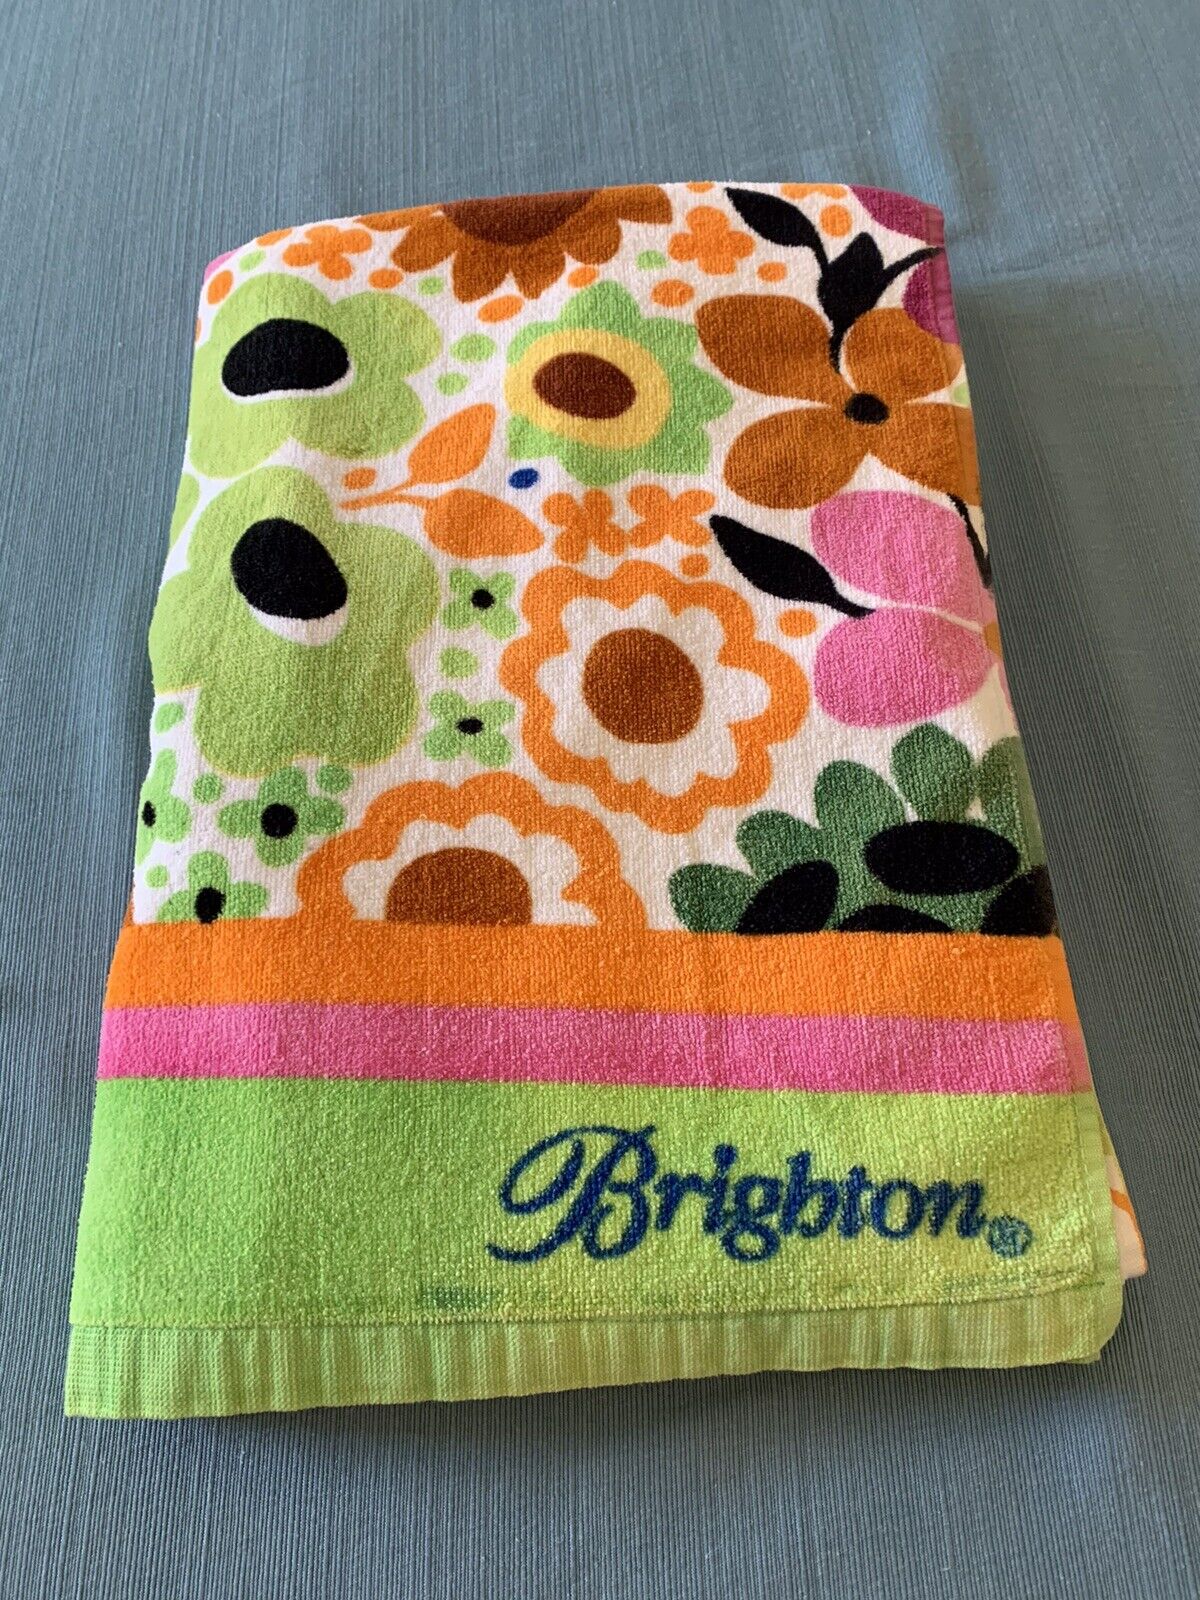 Brighton Beach Towel Vibrant Retro Floral 100% Cotton 35”X 62” Retired